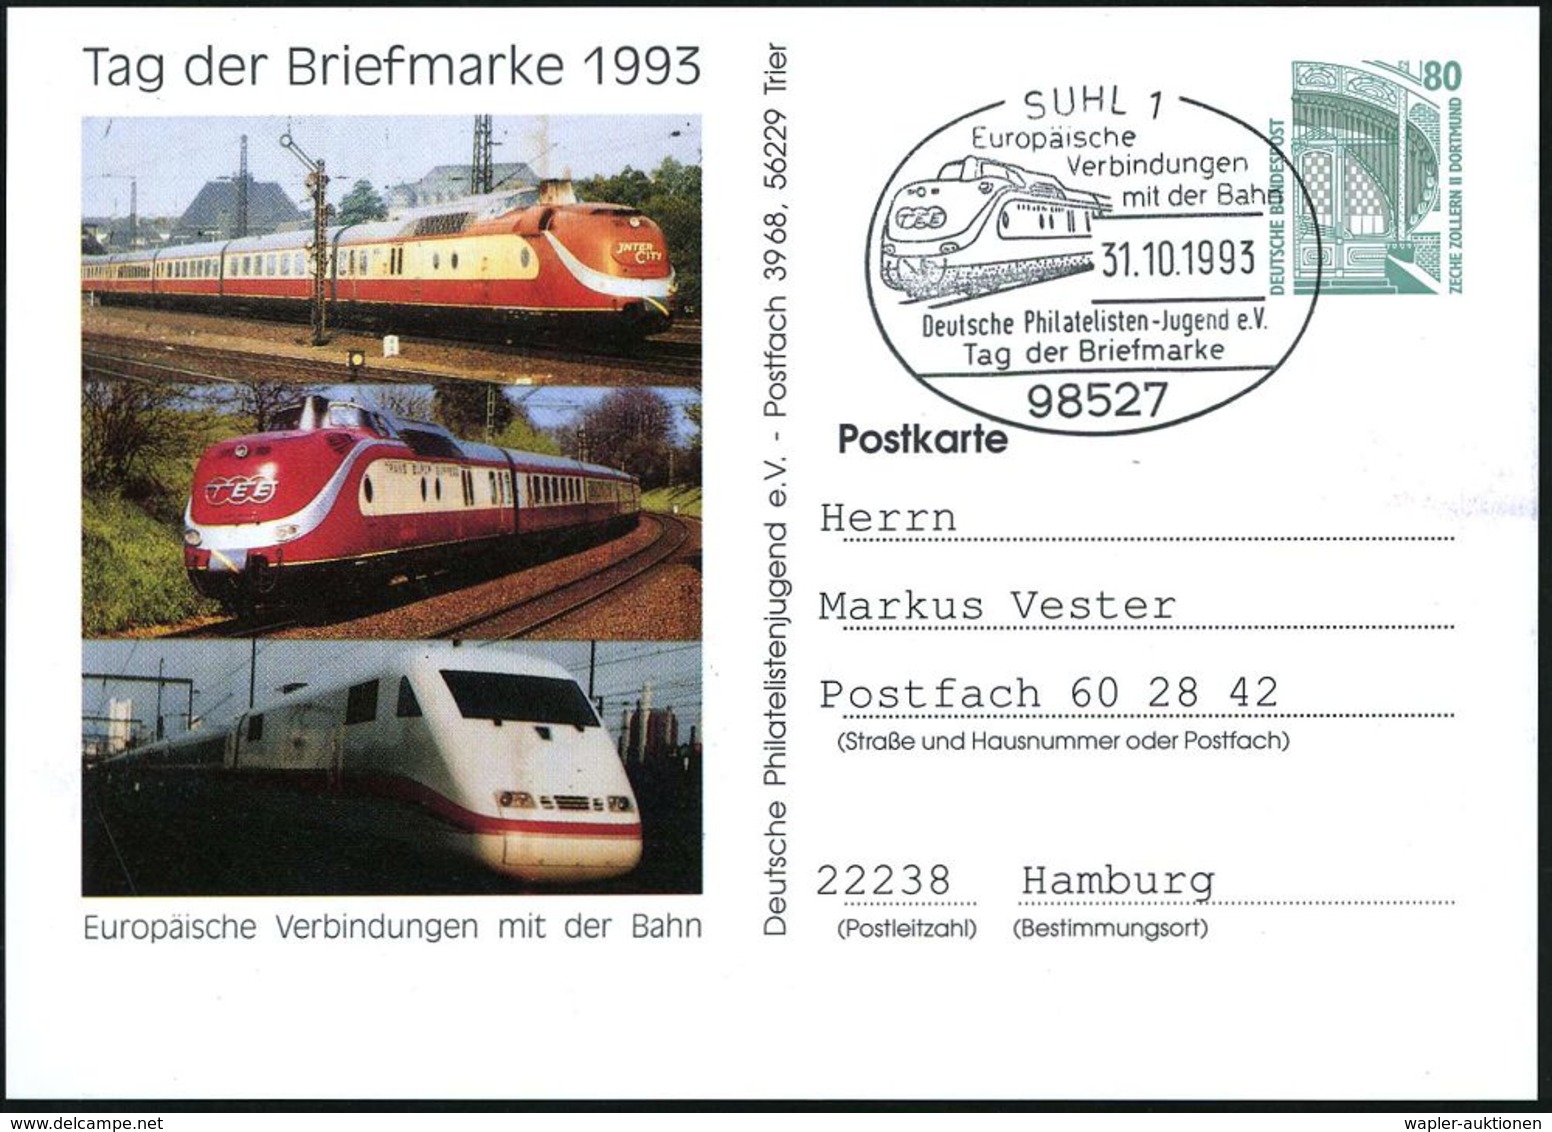 EXRESSZÜGE / TEE / ICE / TRANSRAPID : 98527 SUHL 1/ Europ./ Verbindungen/ Mit D.Bahn/ ..Tag Der Briefmarke 1993 (31.10.) - Trains